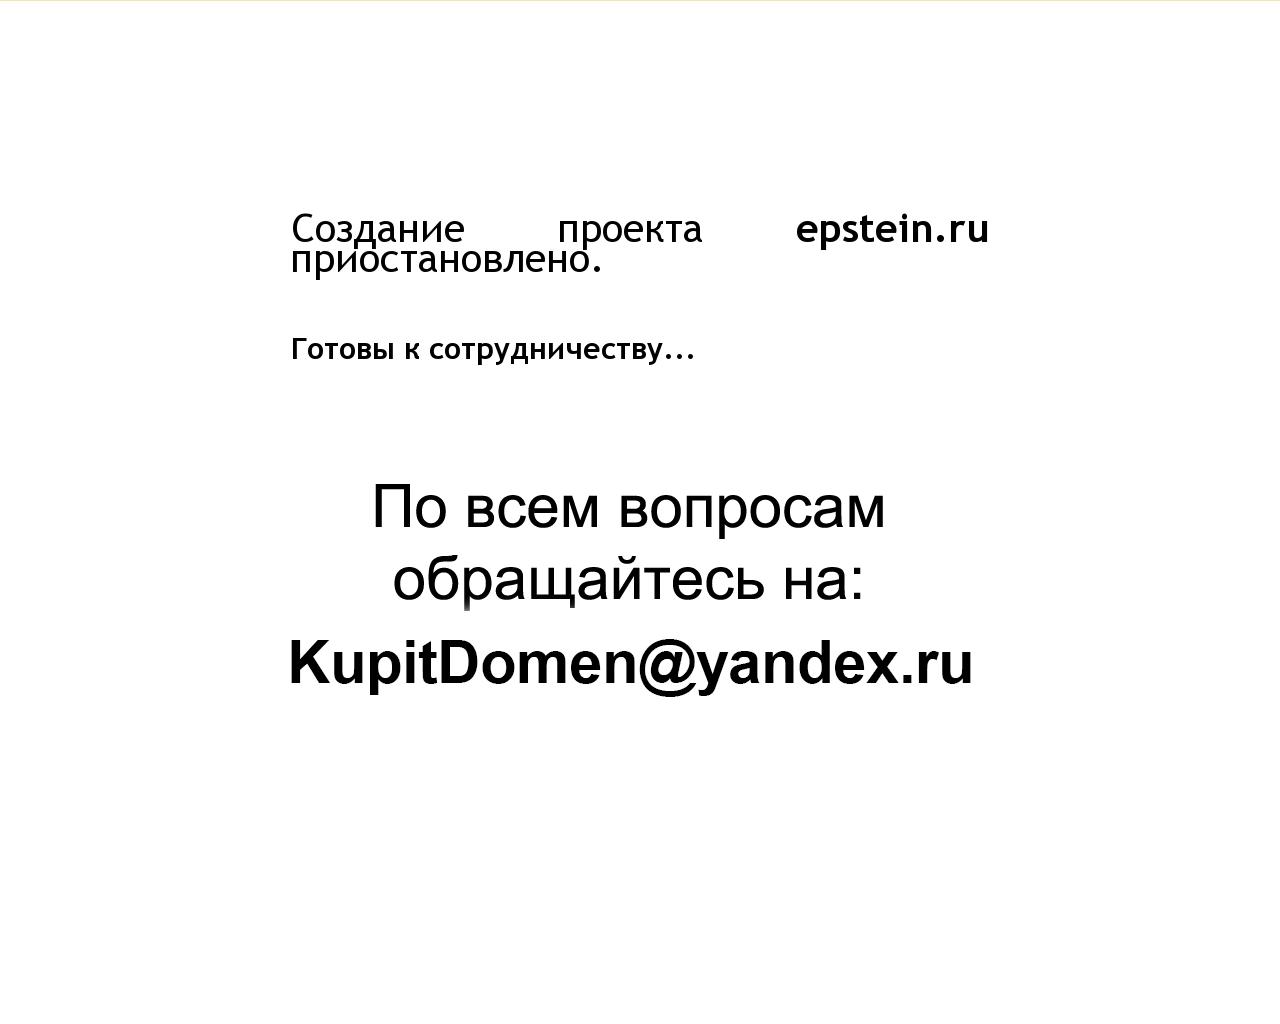 Изображение сайта epstein.ru в разрешении 1280x1024